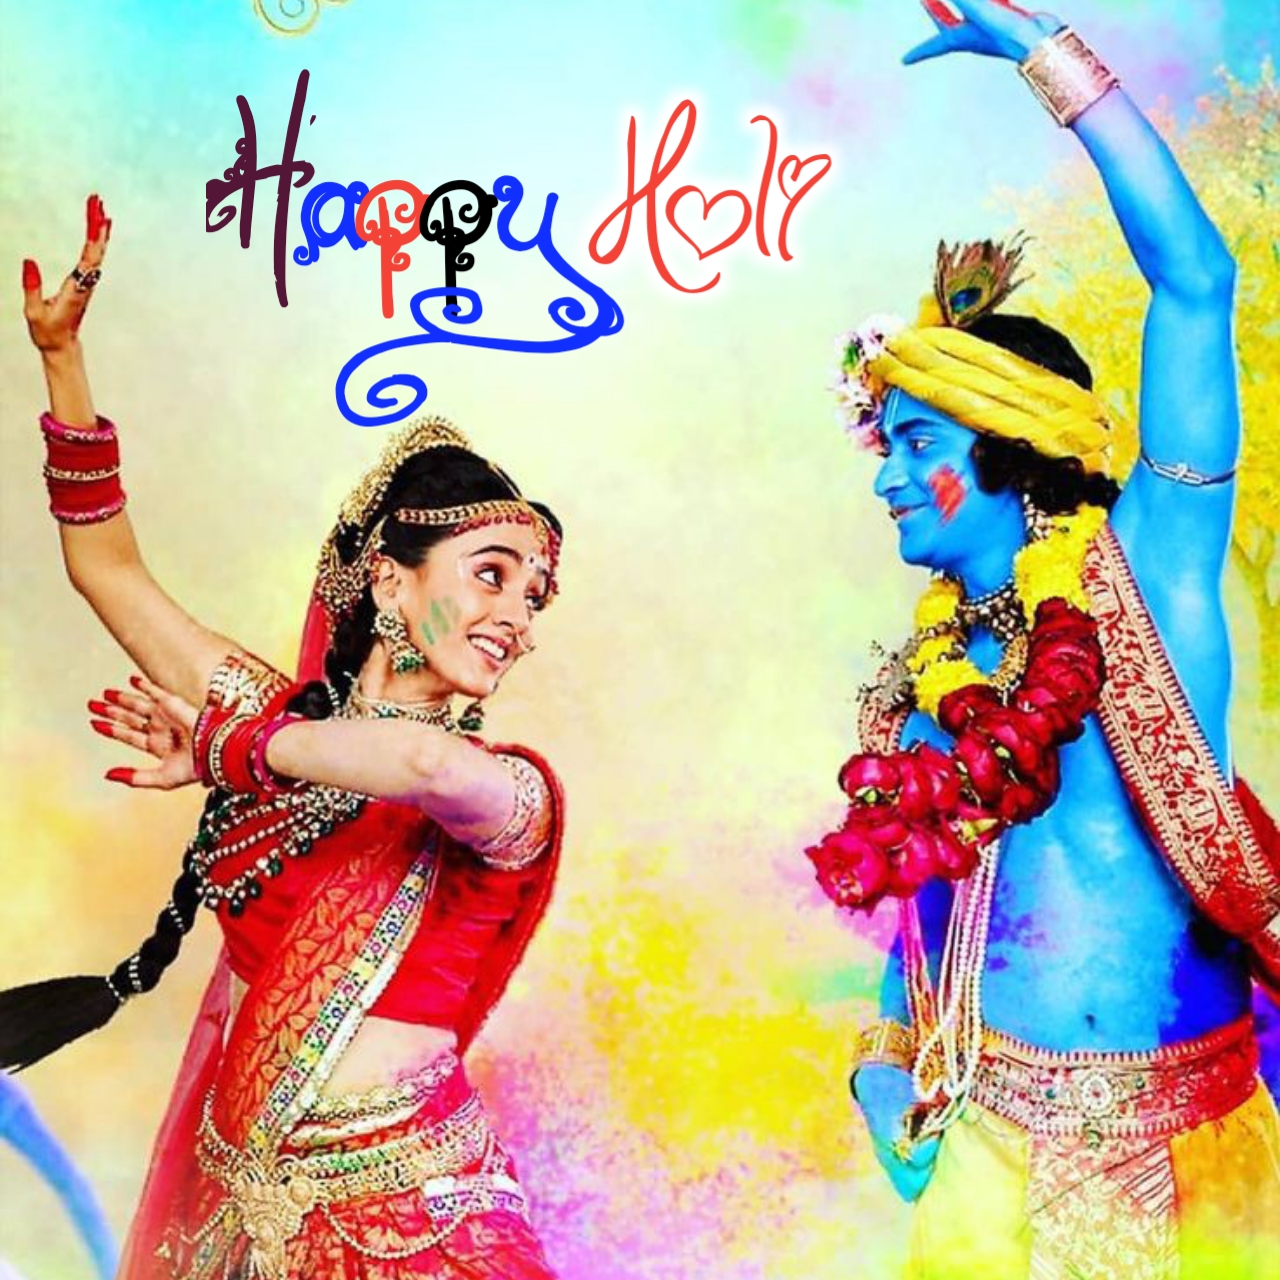 happy holi 2021 wishes in hindi radha kirshna